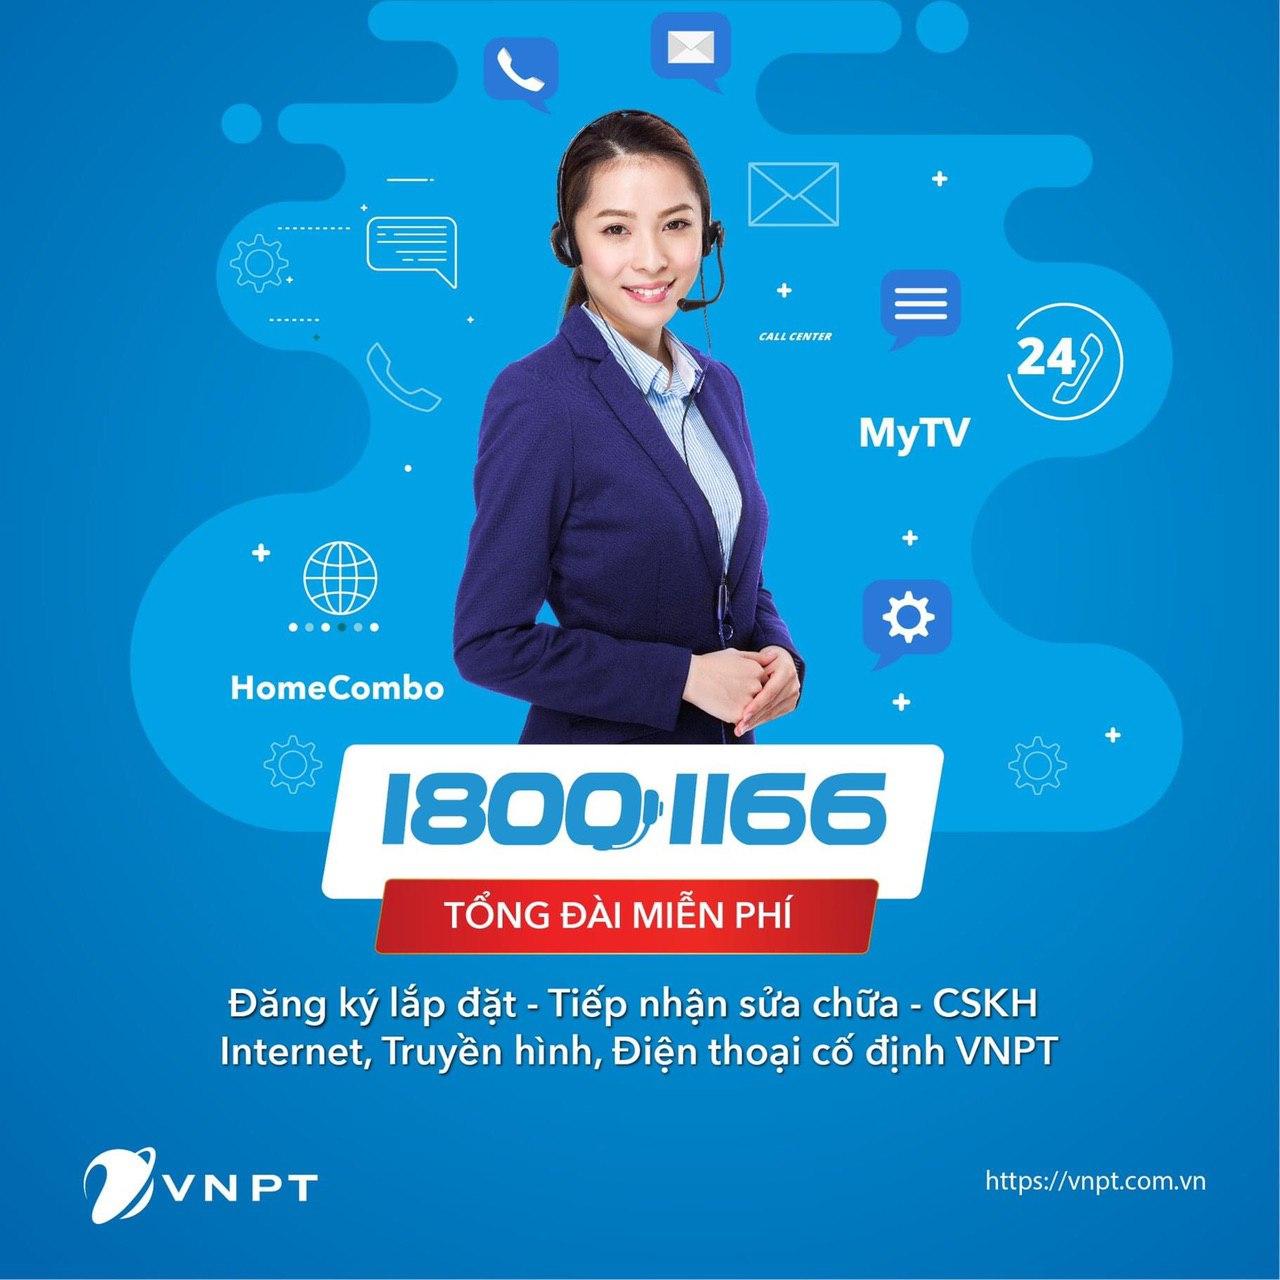 18001166: Tổng đài chăm sóc khách hàng duy nhất của VNPT tại Hà Nội